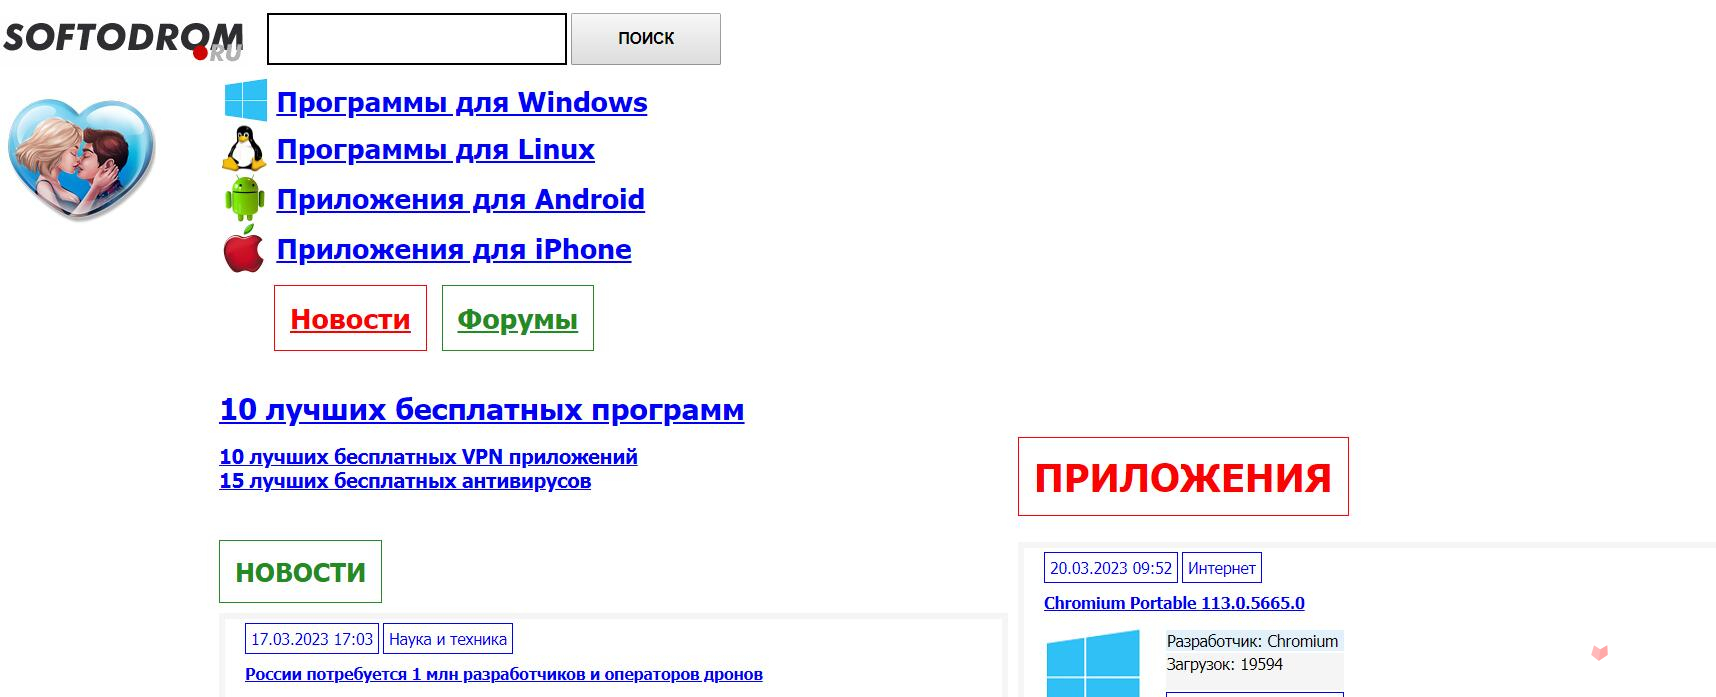 俄罗斯Softodrom.ru软件下载网站入口